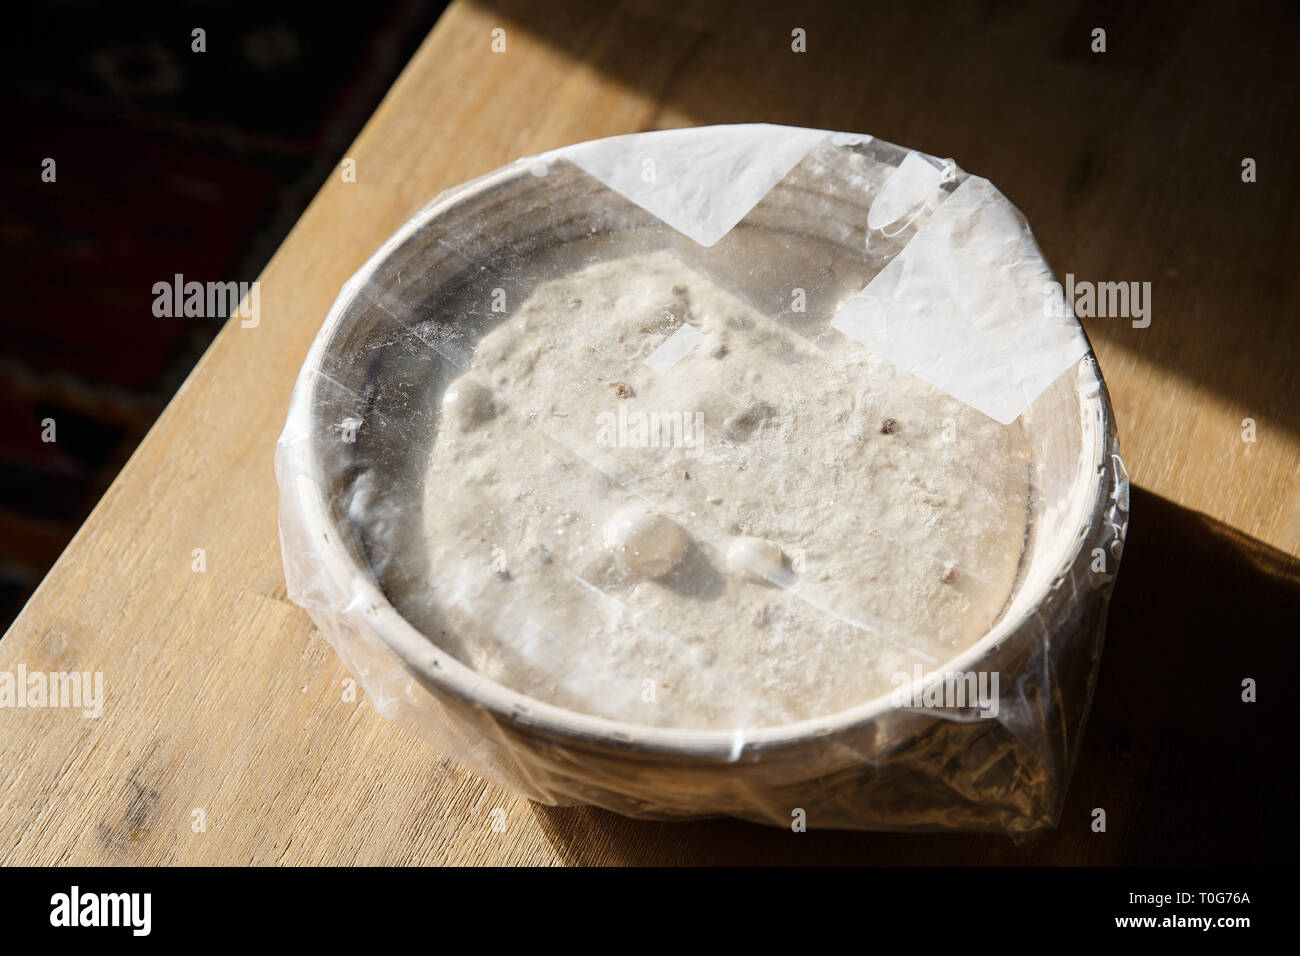 Levage du pain au levain dans un panier recouvert de film